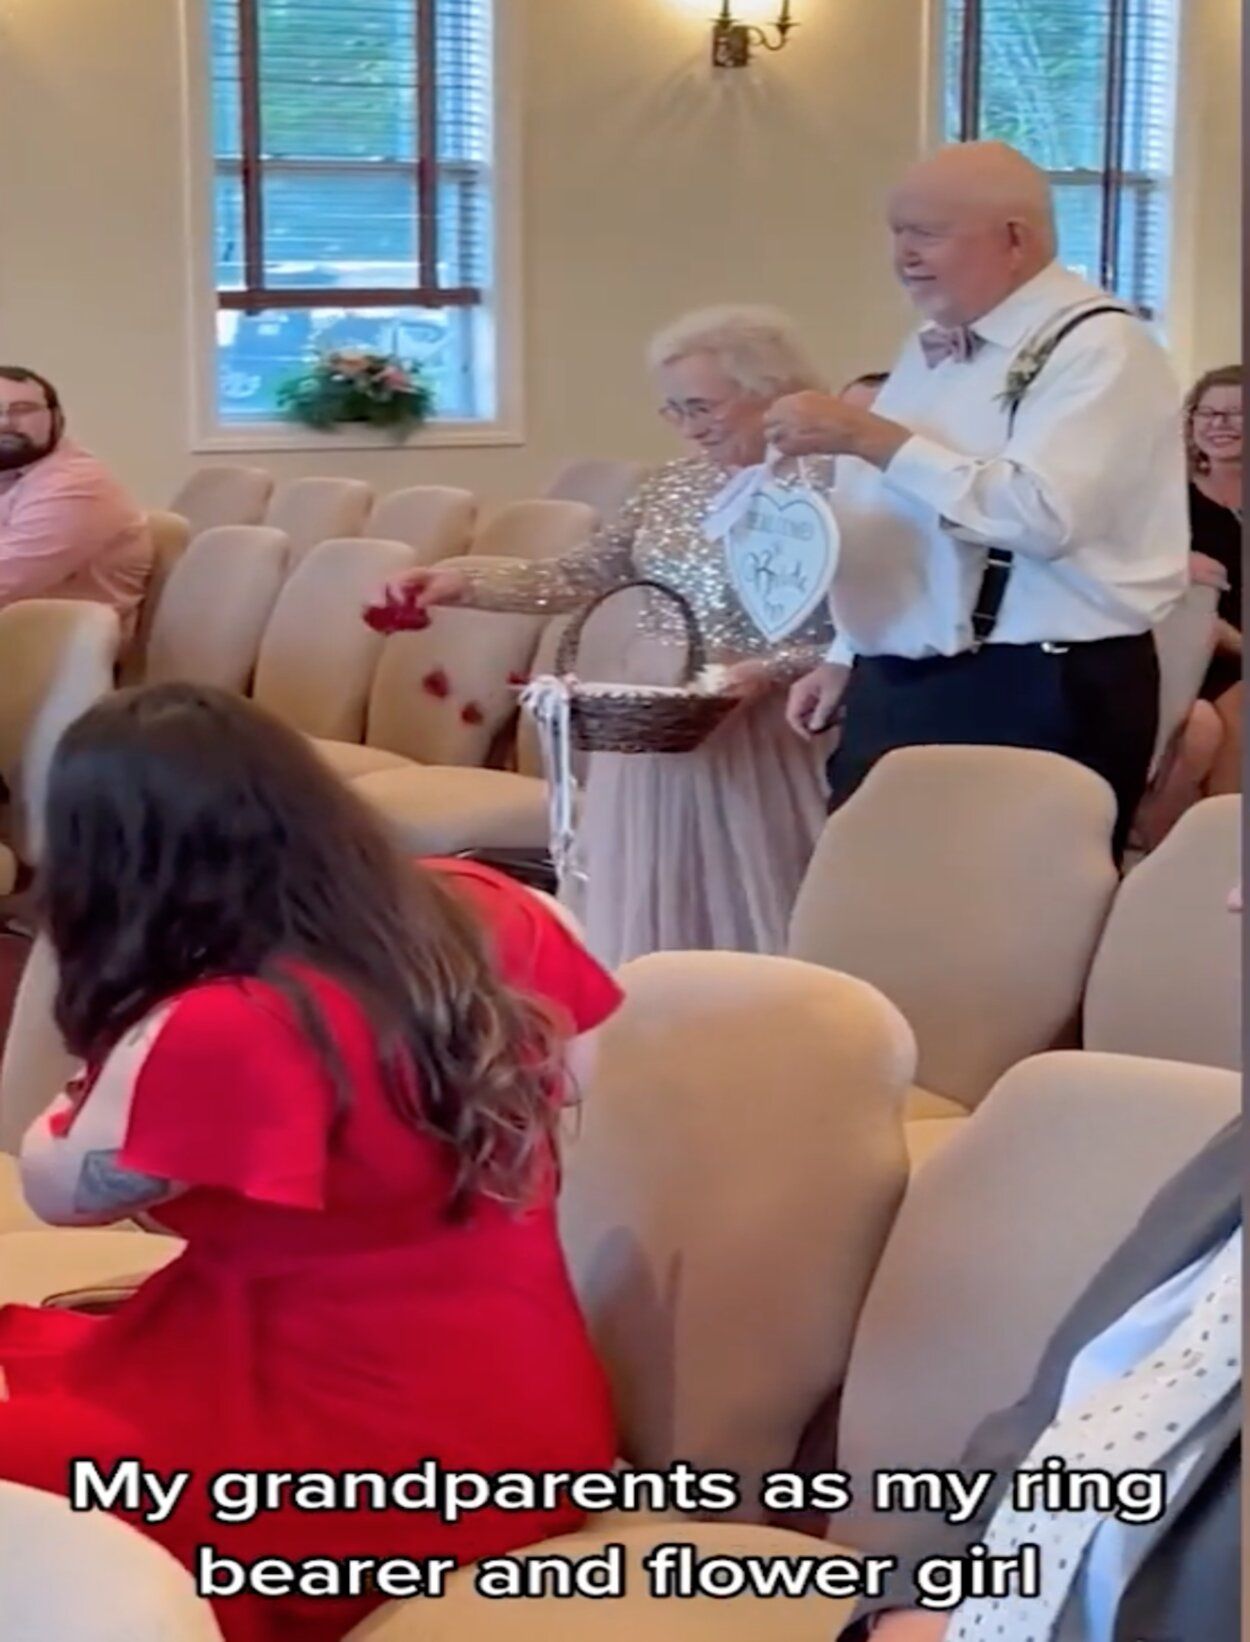 VÍDEO: Una novia se emociona al ver a sus abuelos llevando los anillos en su boda